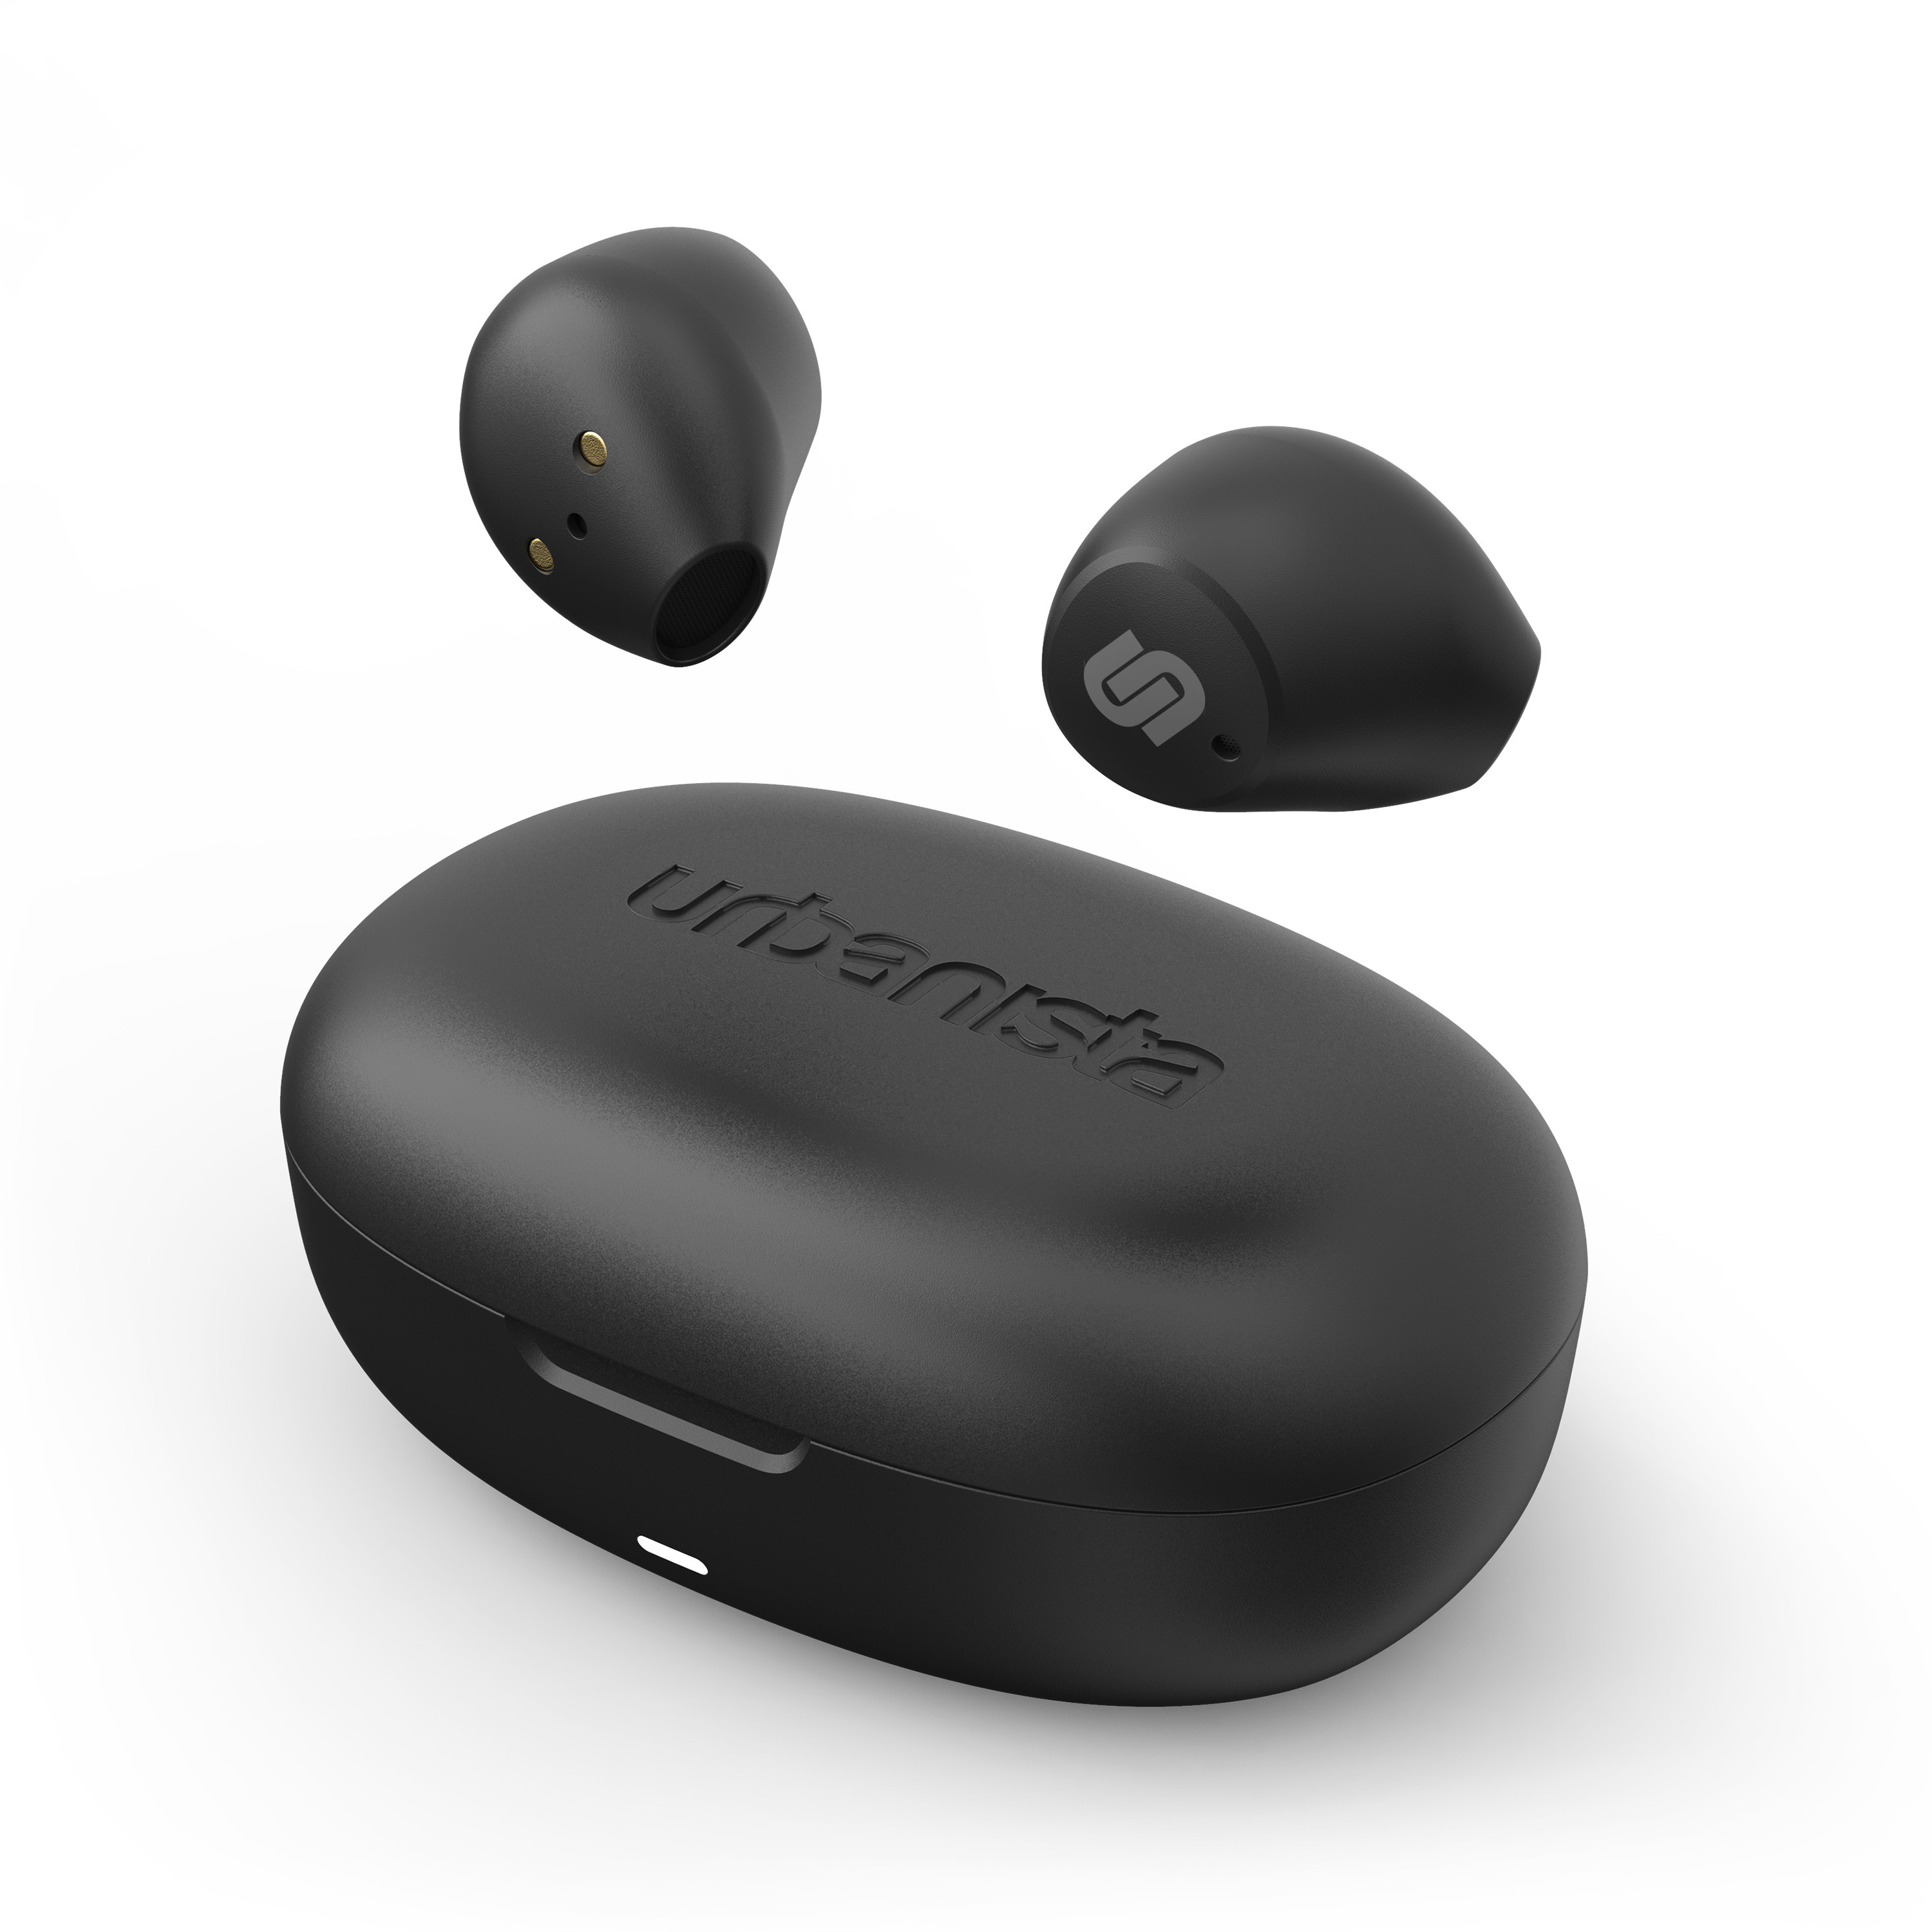 URBANISTA Bluetooth Lisbon, - Wireless Black In-Ear In-ear Headphones Midnight